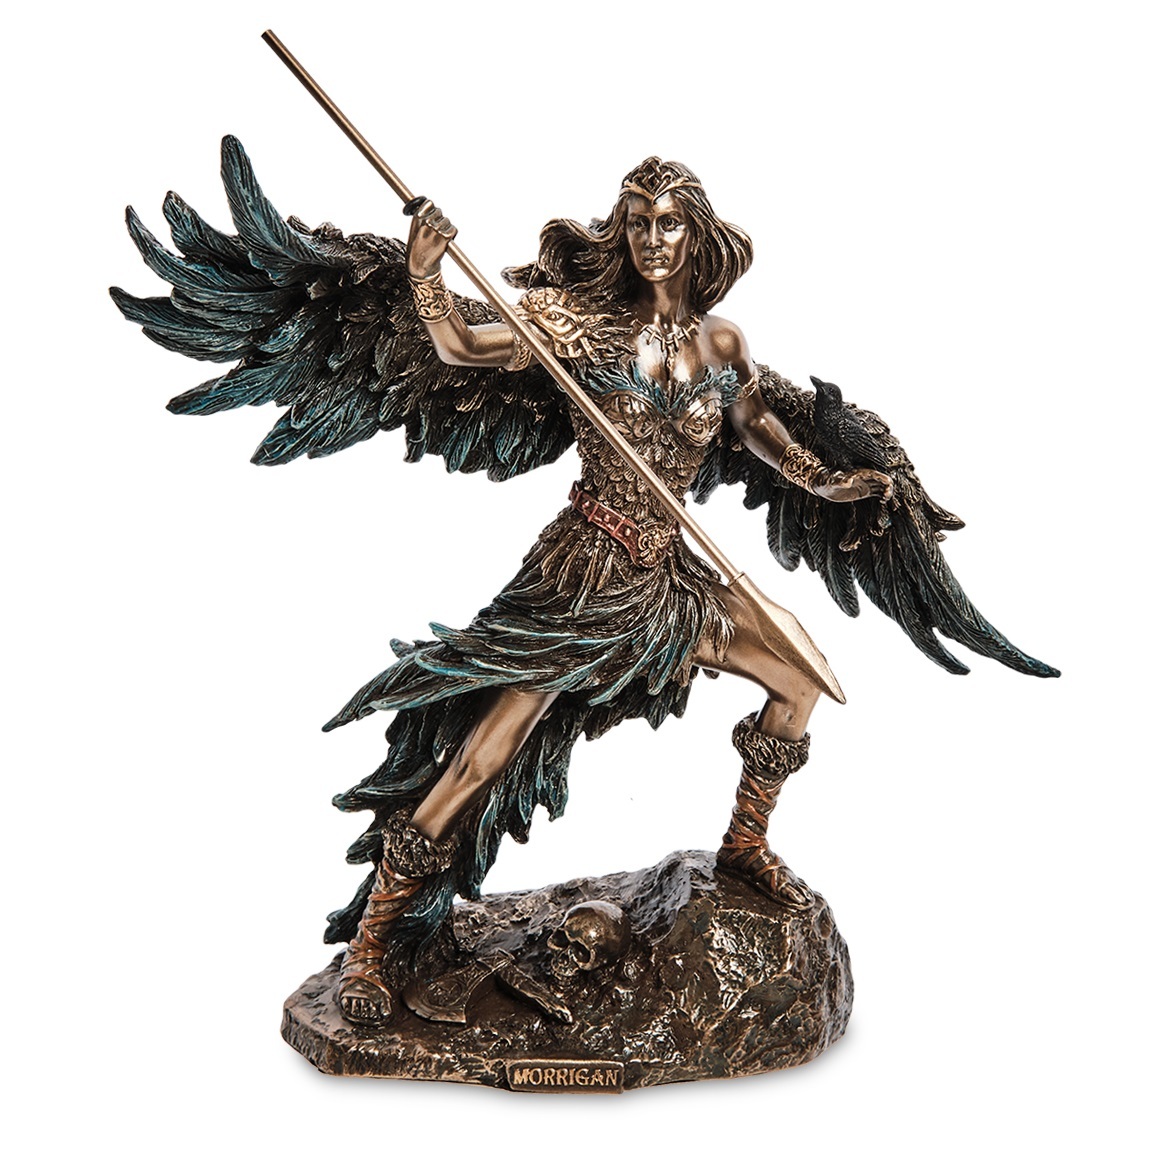 

Алтарная статуэтка "Морриган, ирландская богиня-воительница"